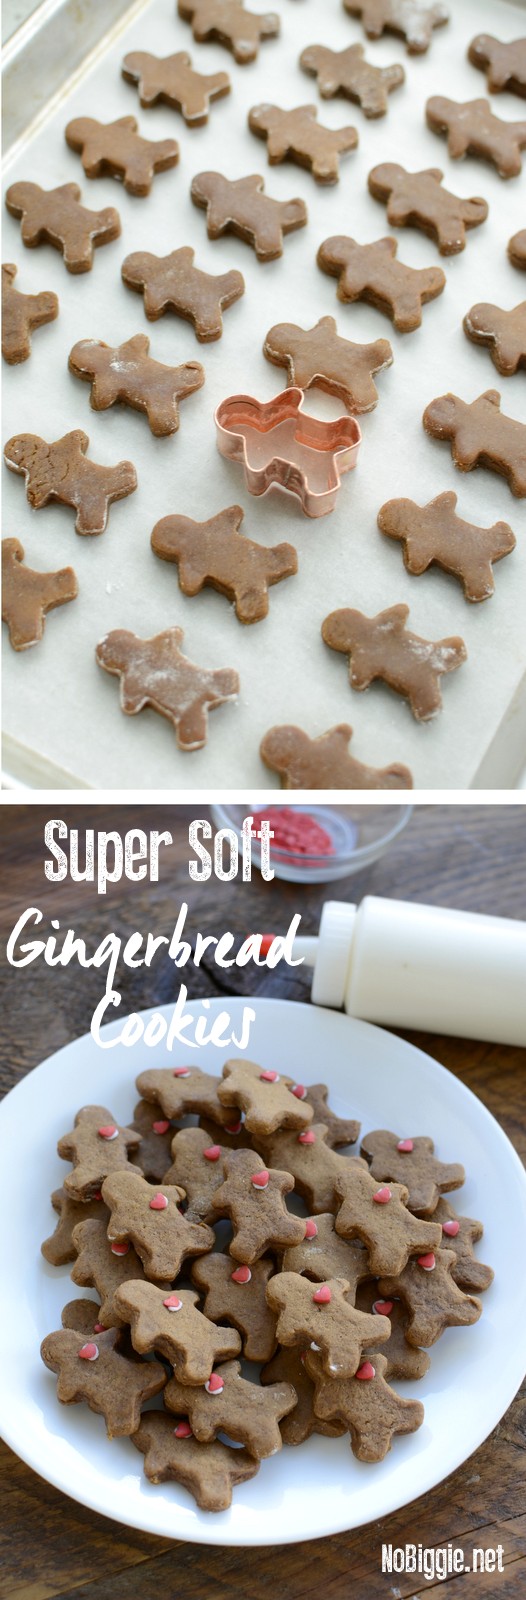 Super Soft Gingerbread Cookie dough recipe | NoBiggie.net